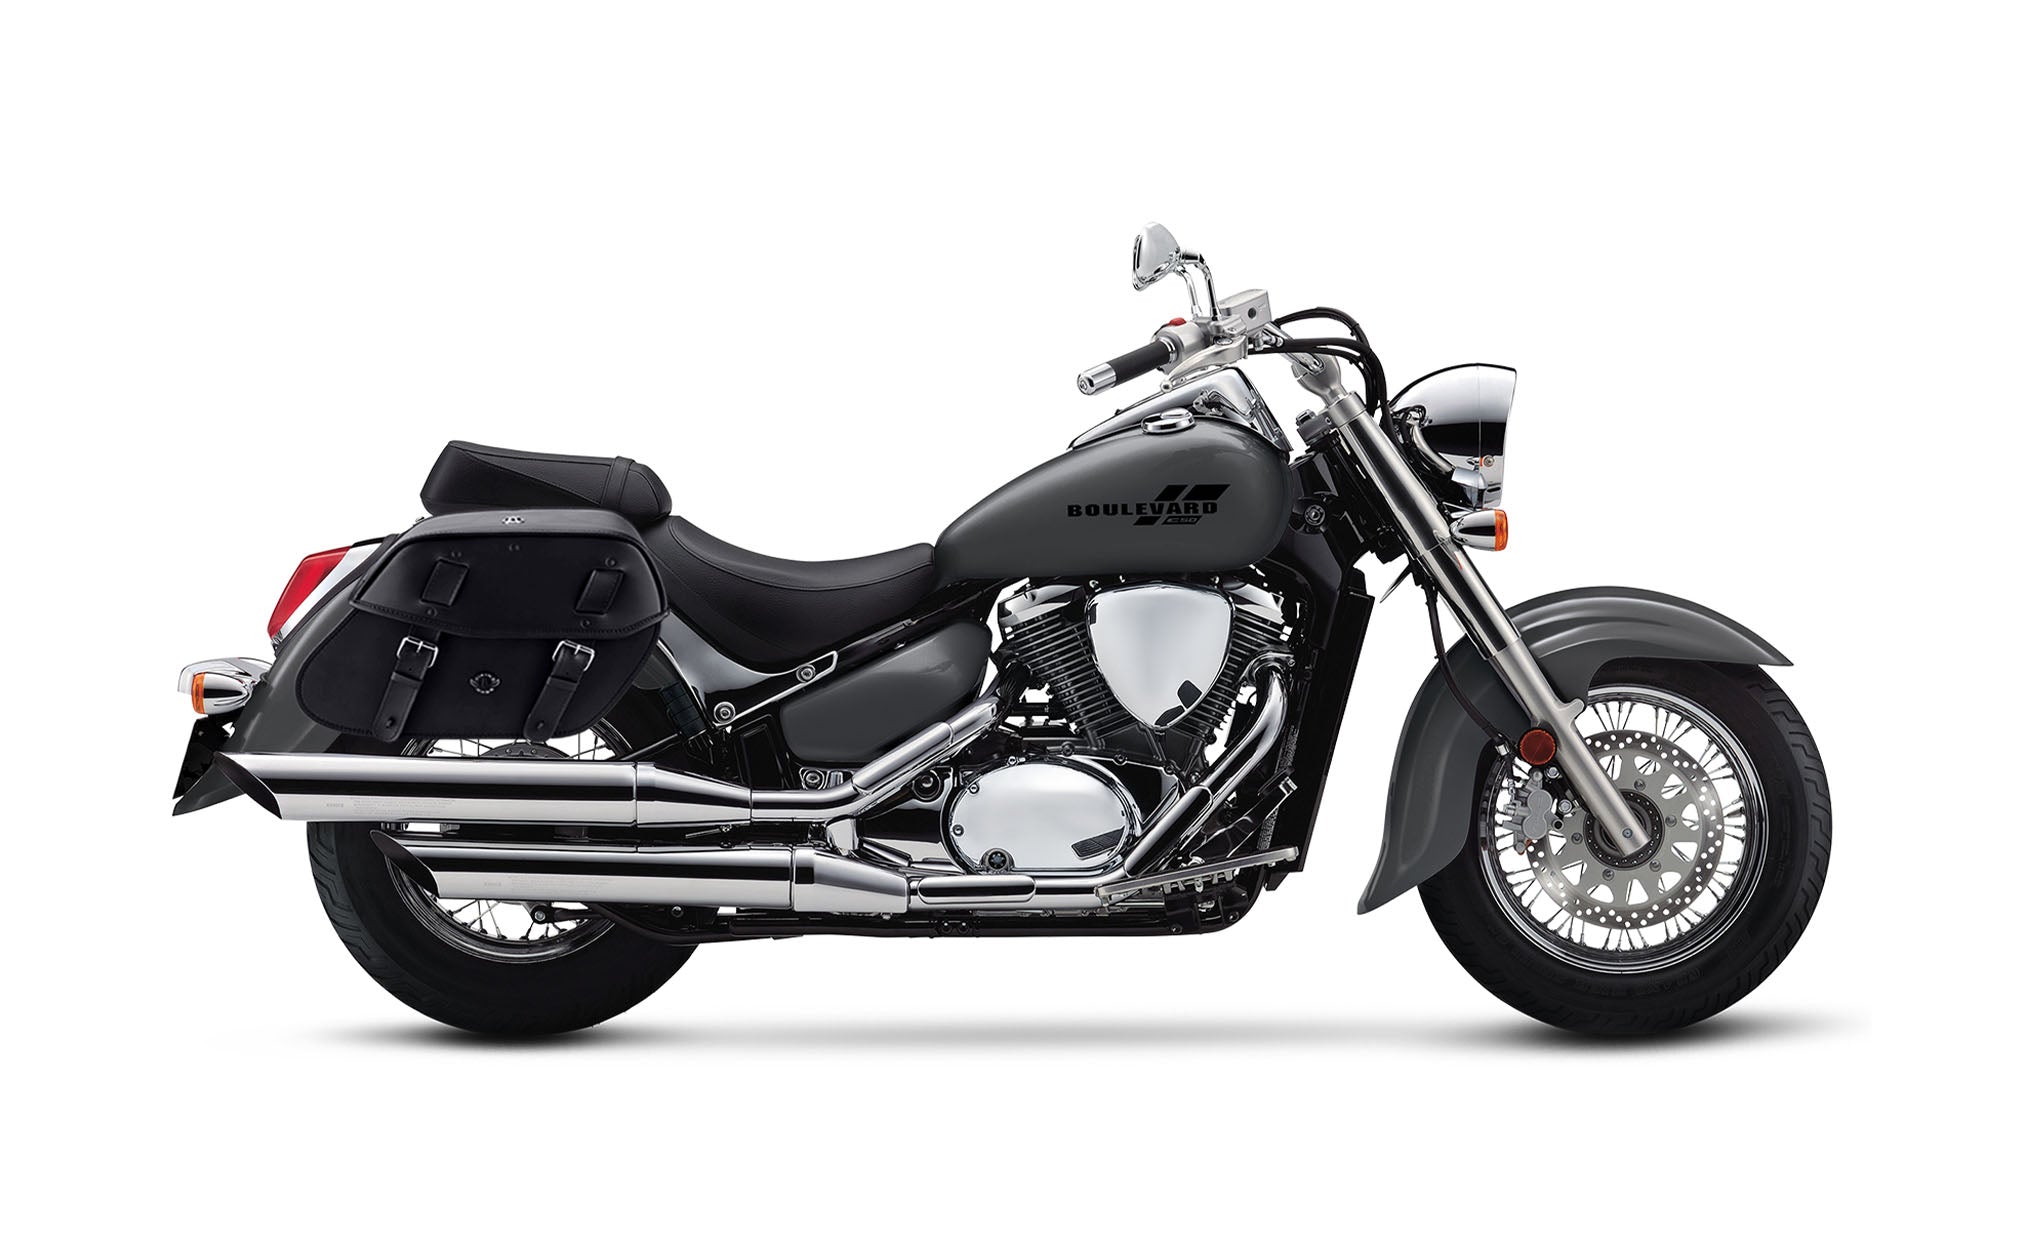 Viking Odin Large Suzuki Boulevard C50 Vl800 Leather Motorcycle Saddlebags on Bike Photo @expand